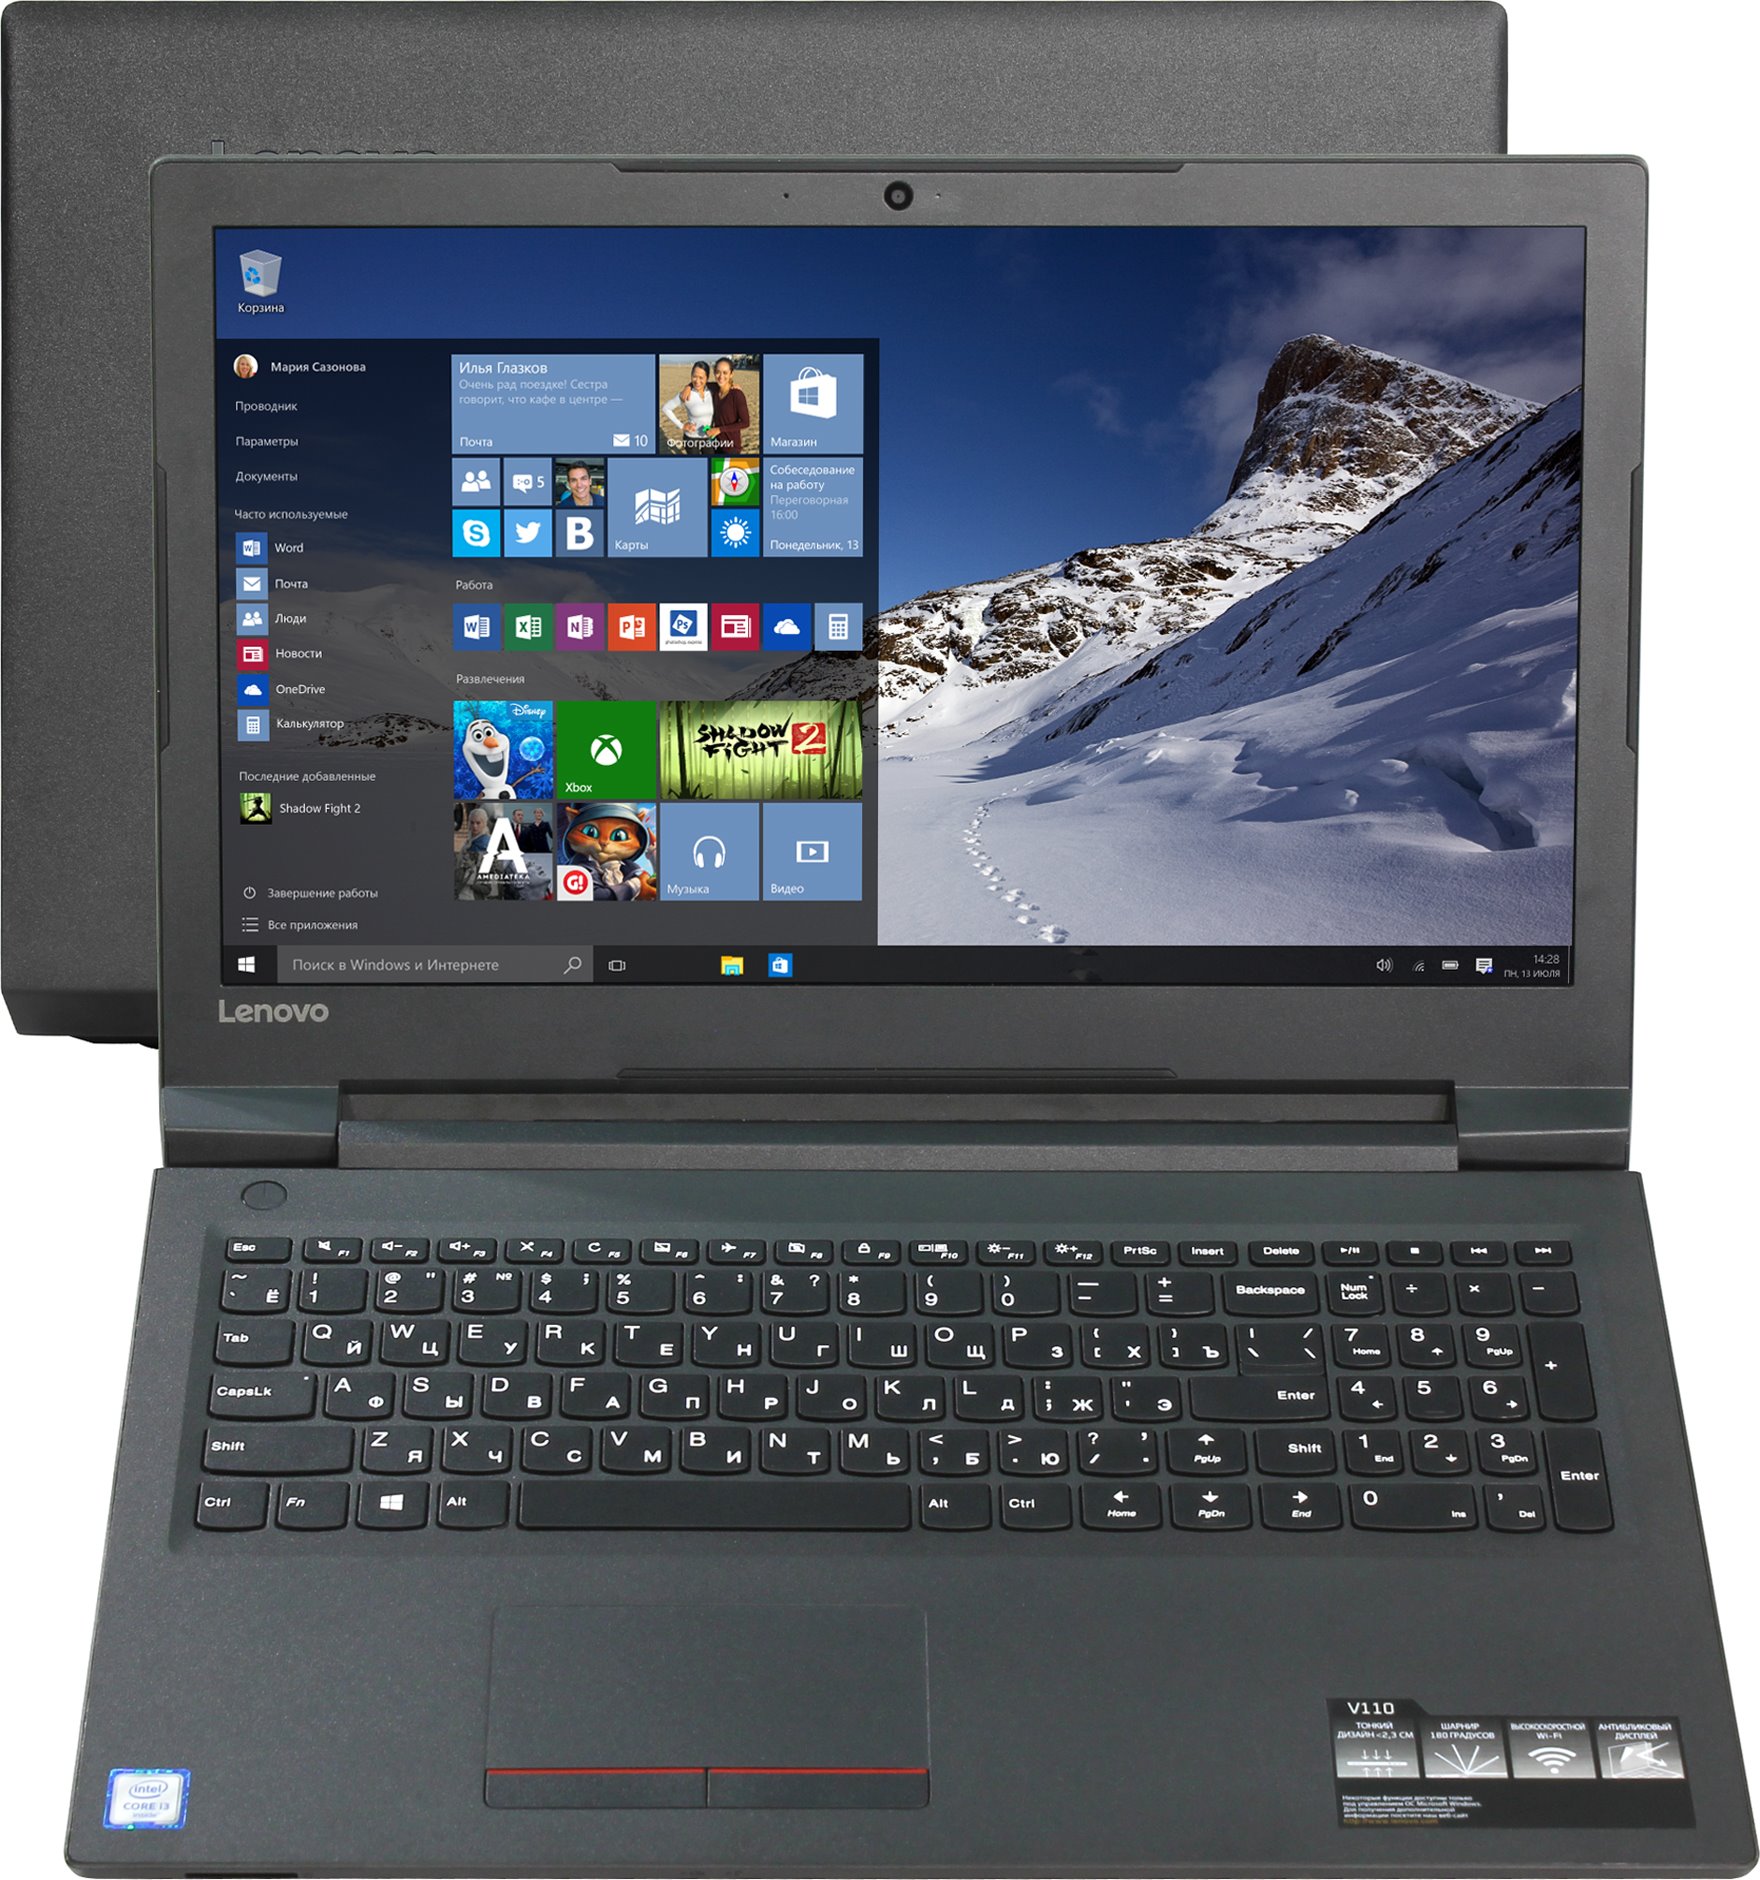 Ноутбук Lenovo IdeaPad V110-15ISK Intel Core i3-6006U/4Gb/500Gb/15.6 FHD/WiFi/BT/Windows 10™  (80TL00DBRK)